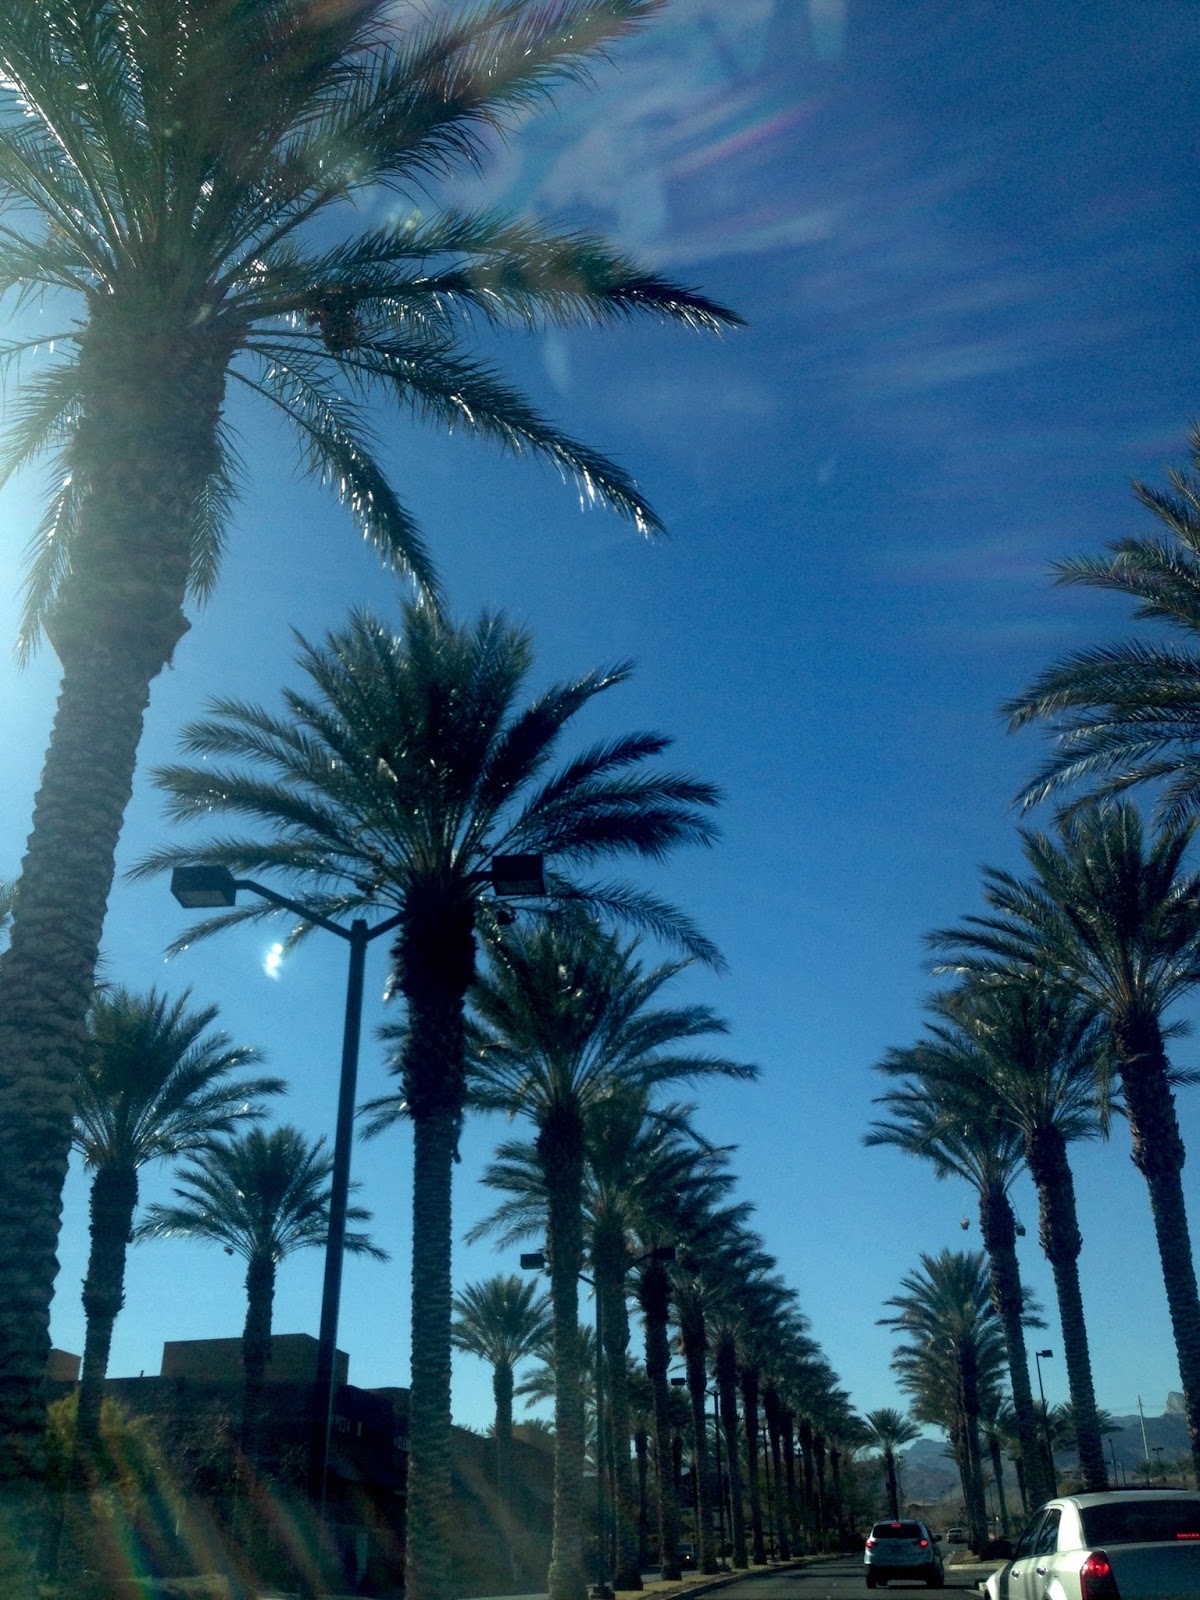 Las Vegas Summerlin Majestic Palm Trees in the desert